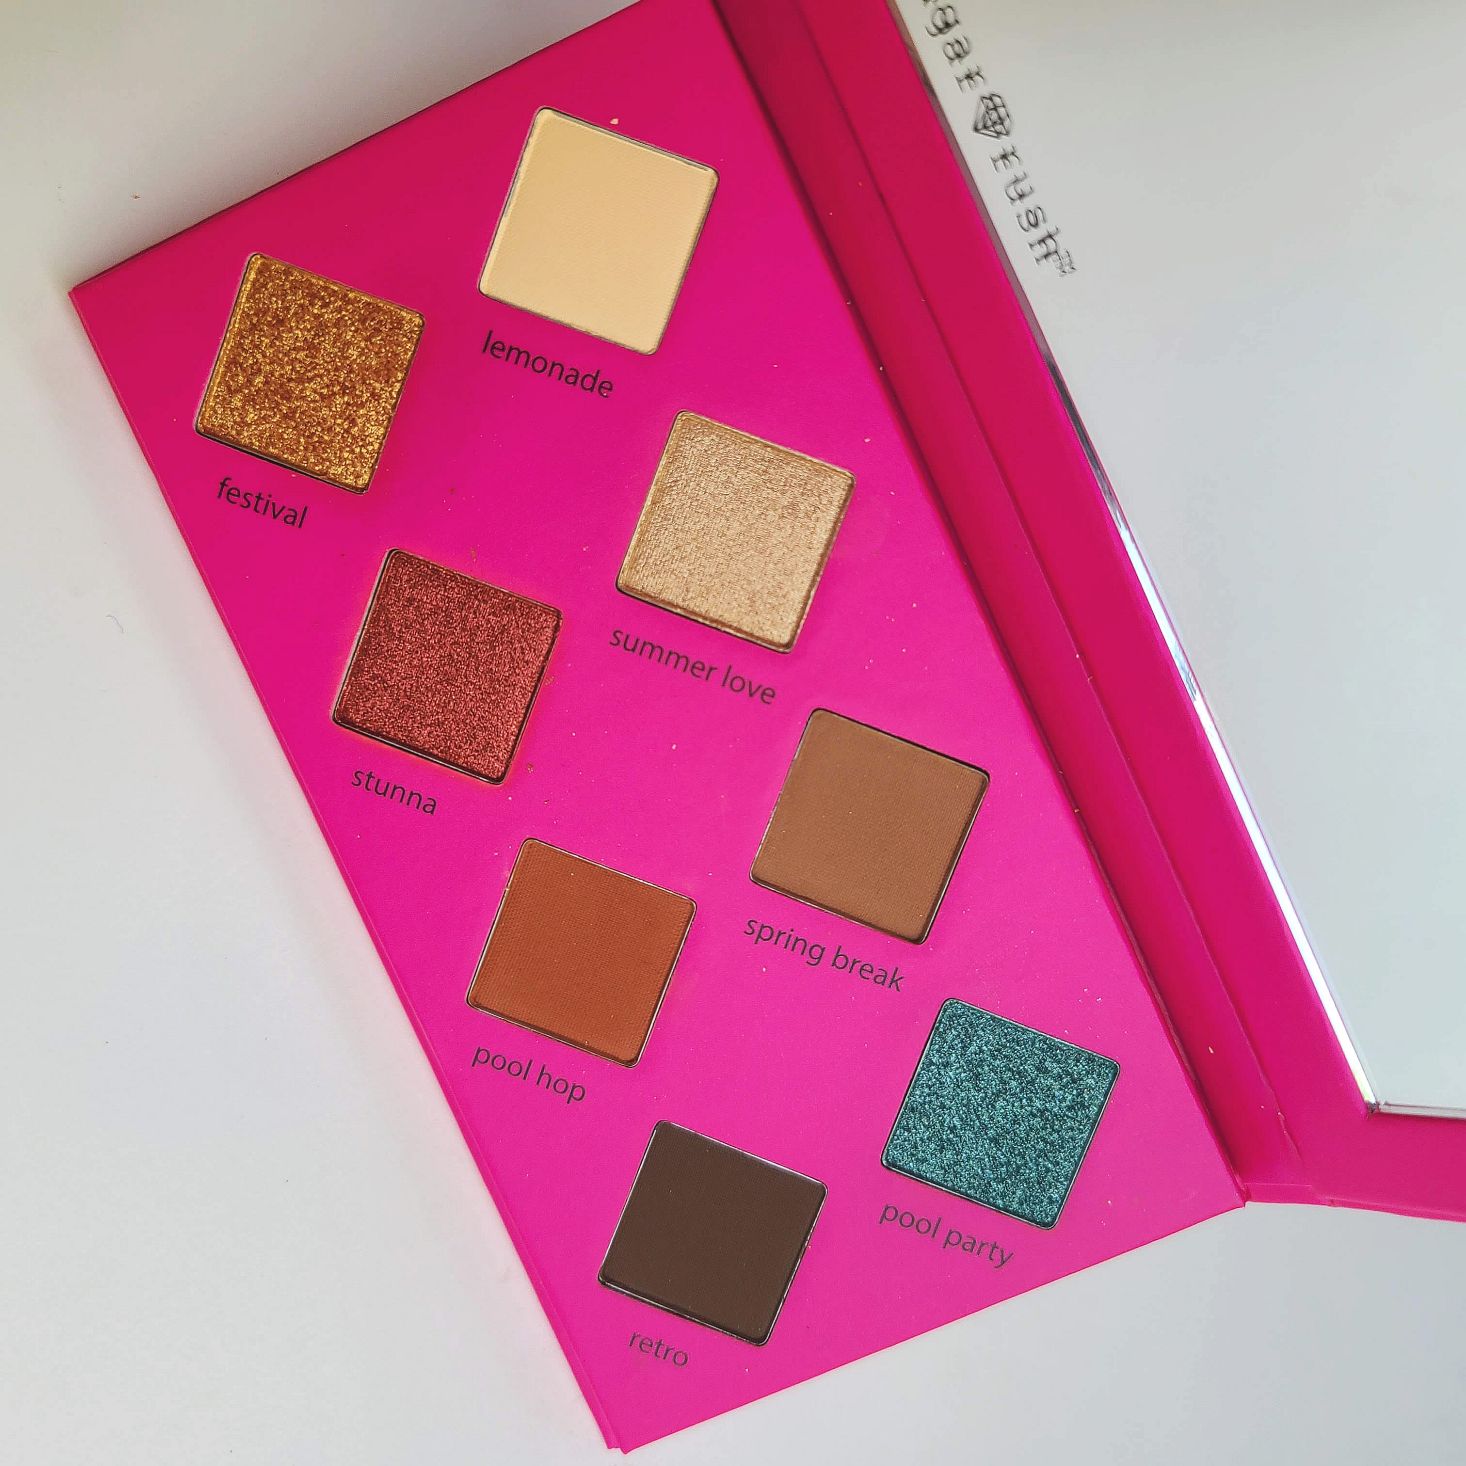 Tarte Create Your Own Beauty Kit June 2020 eye shadow palette